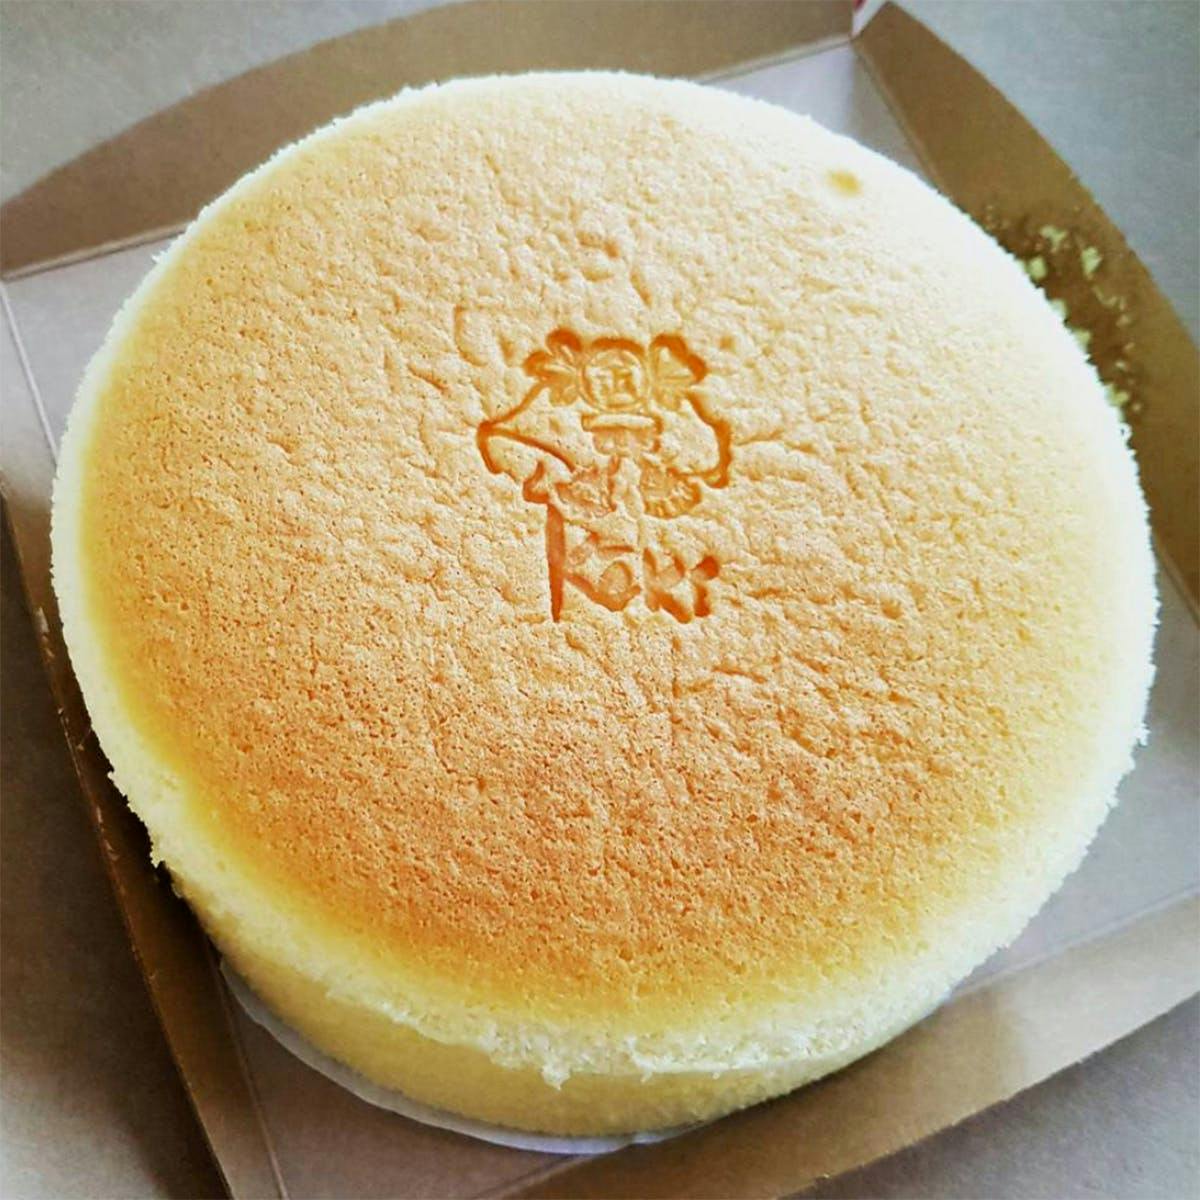 Jiggly Japanese cheesecake - Spatula Desserts